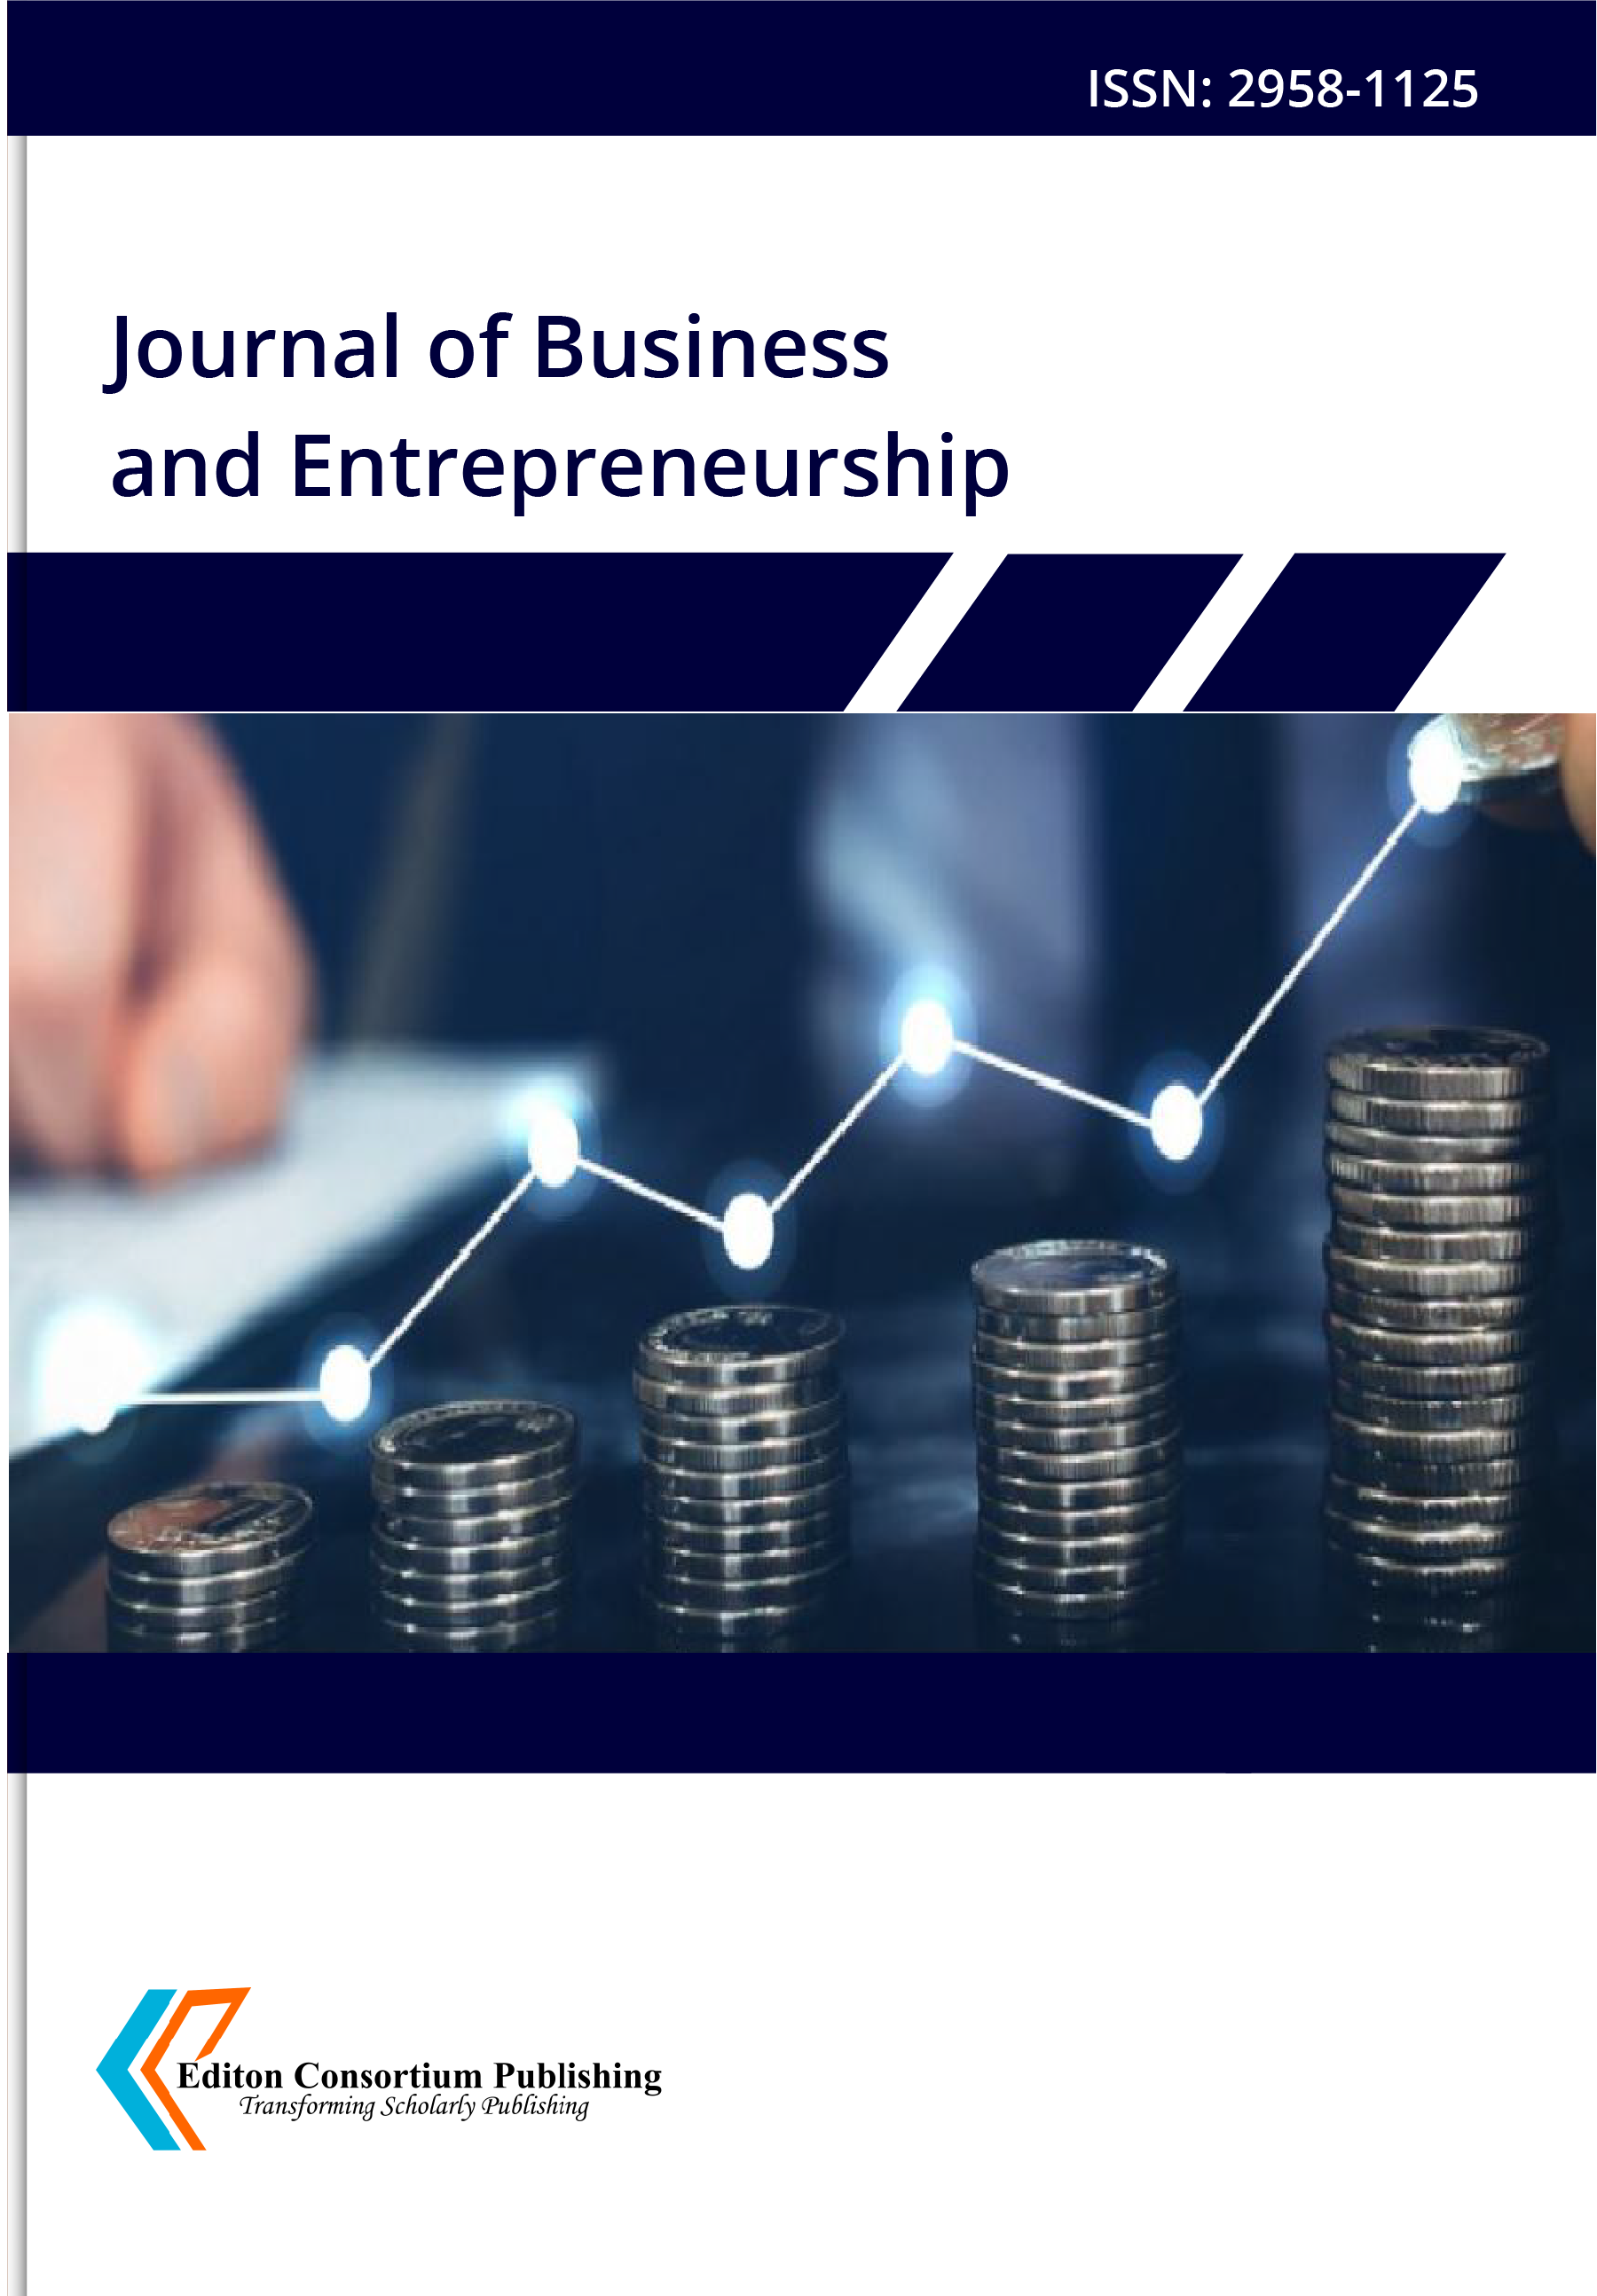  Journal of Business and Entrepreneurship